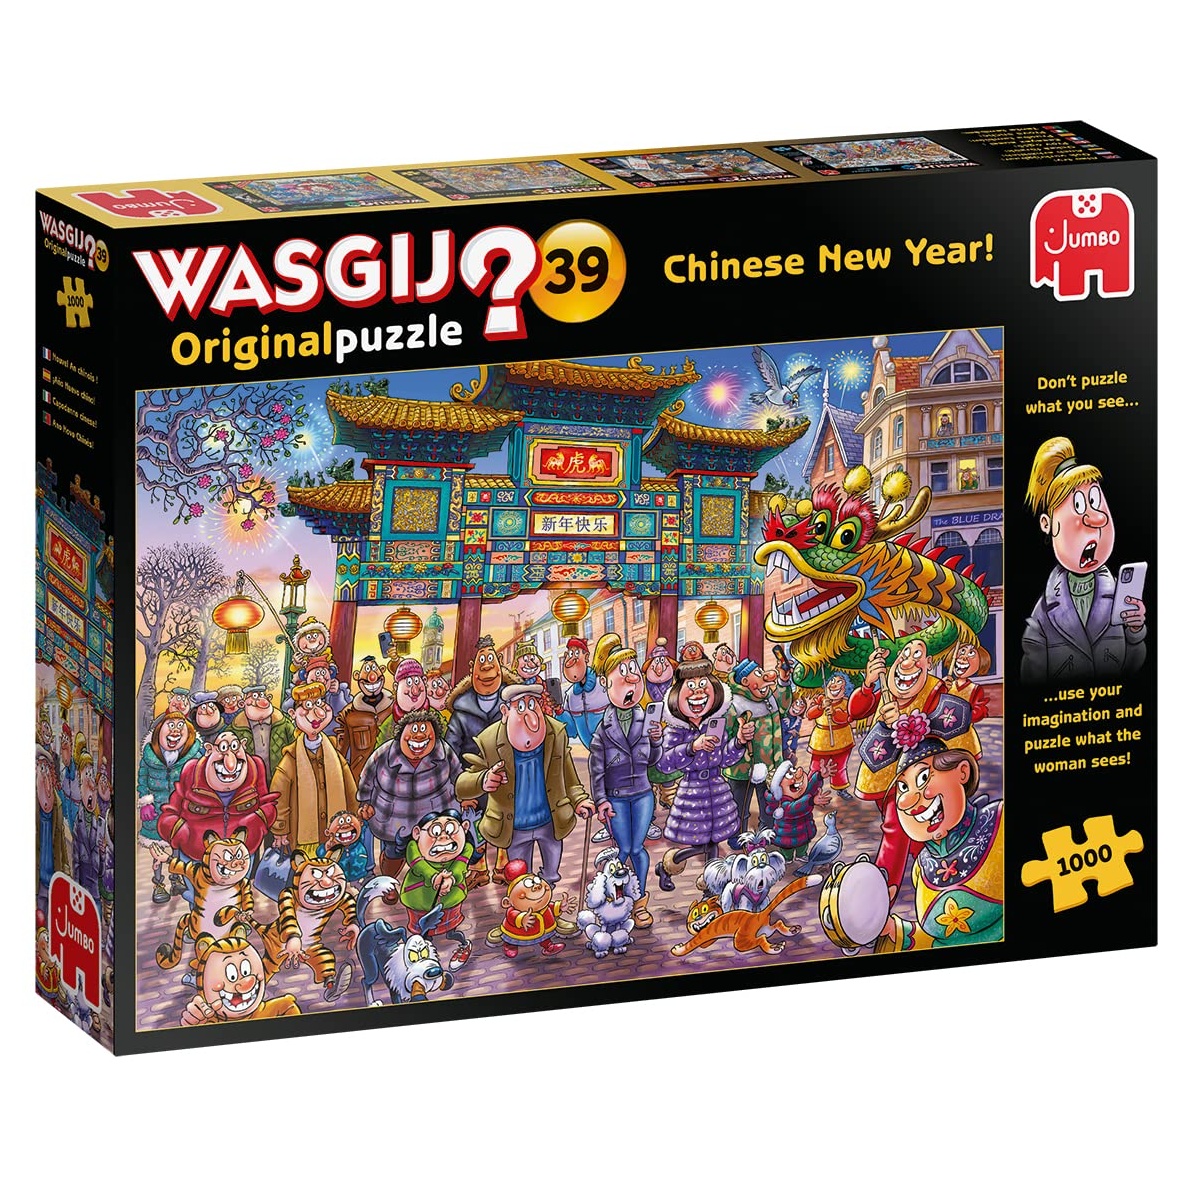 Bild Jumbo Wasgij Original Chinese New Year! (25011)